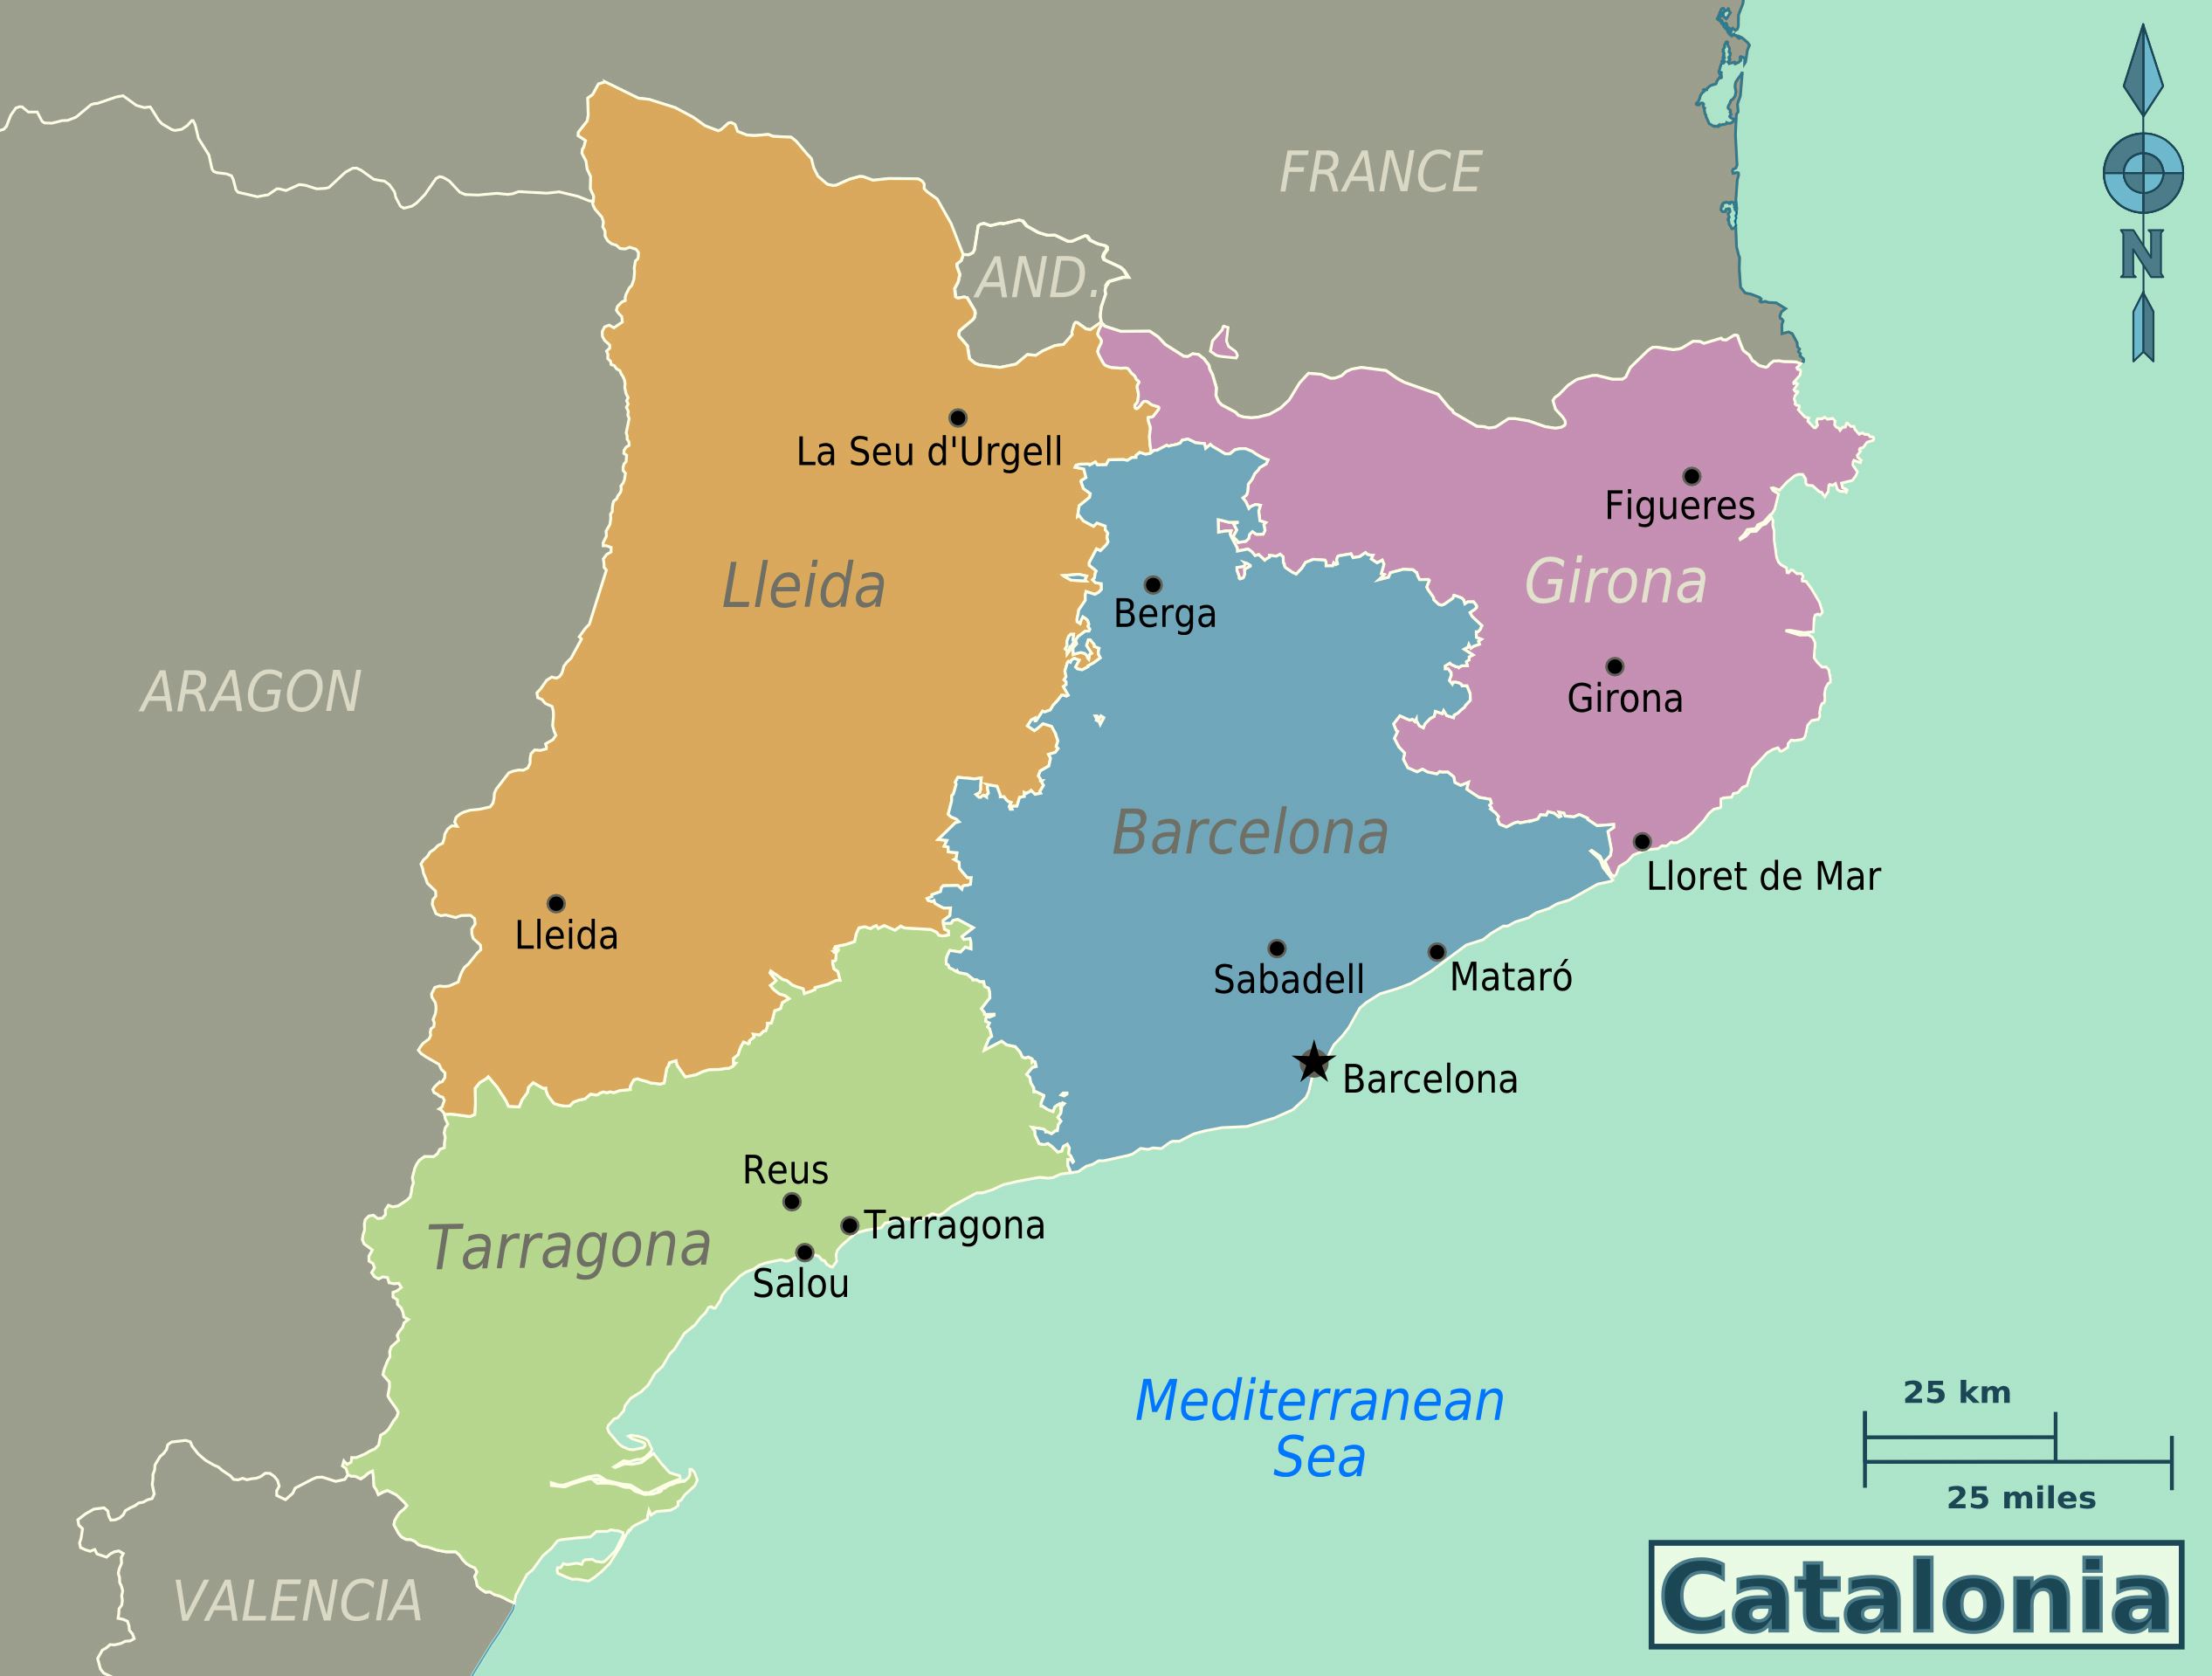 Qué te parece Cataluña? Forocoches